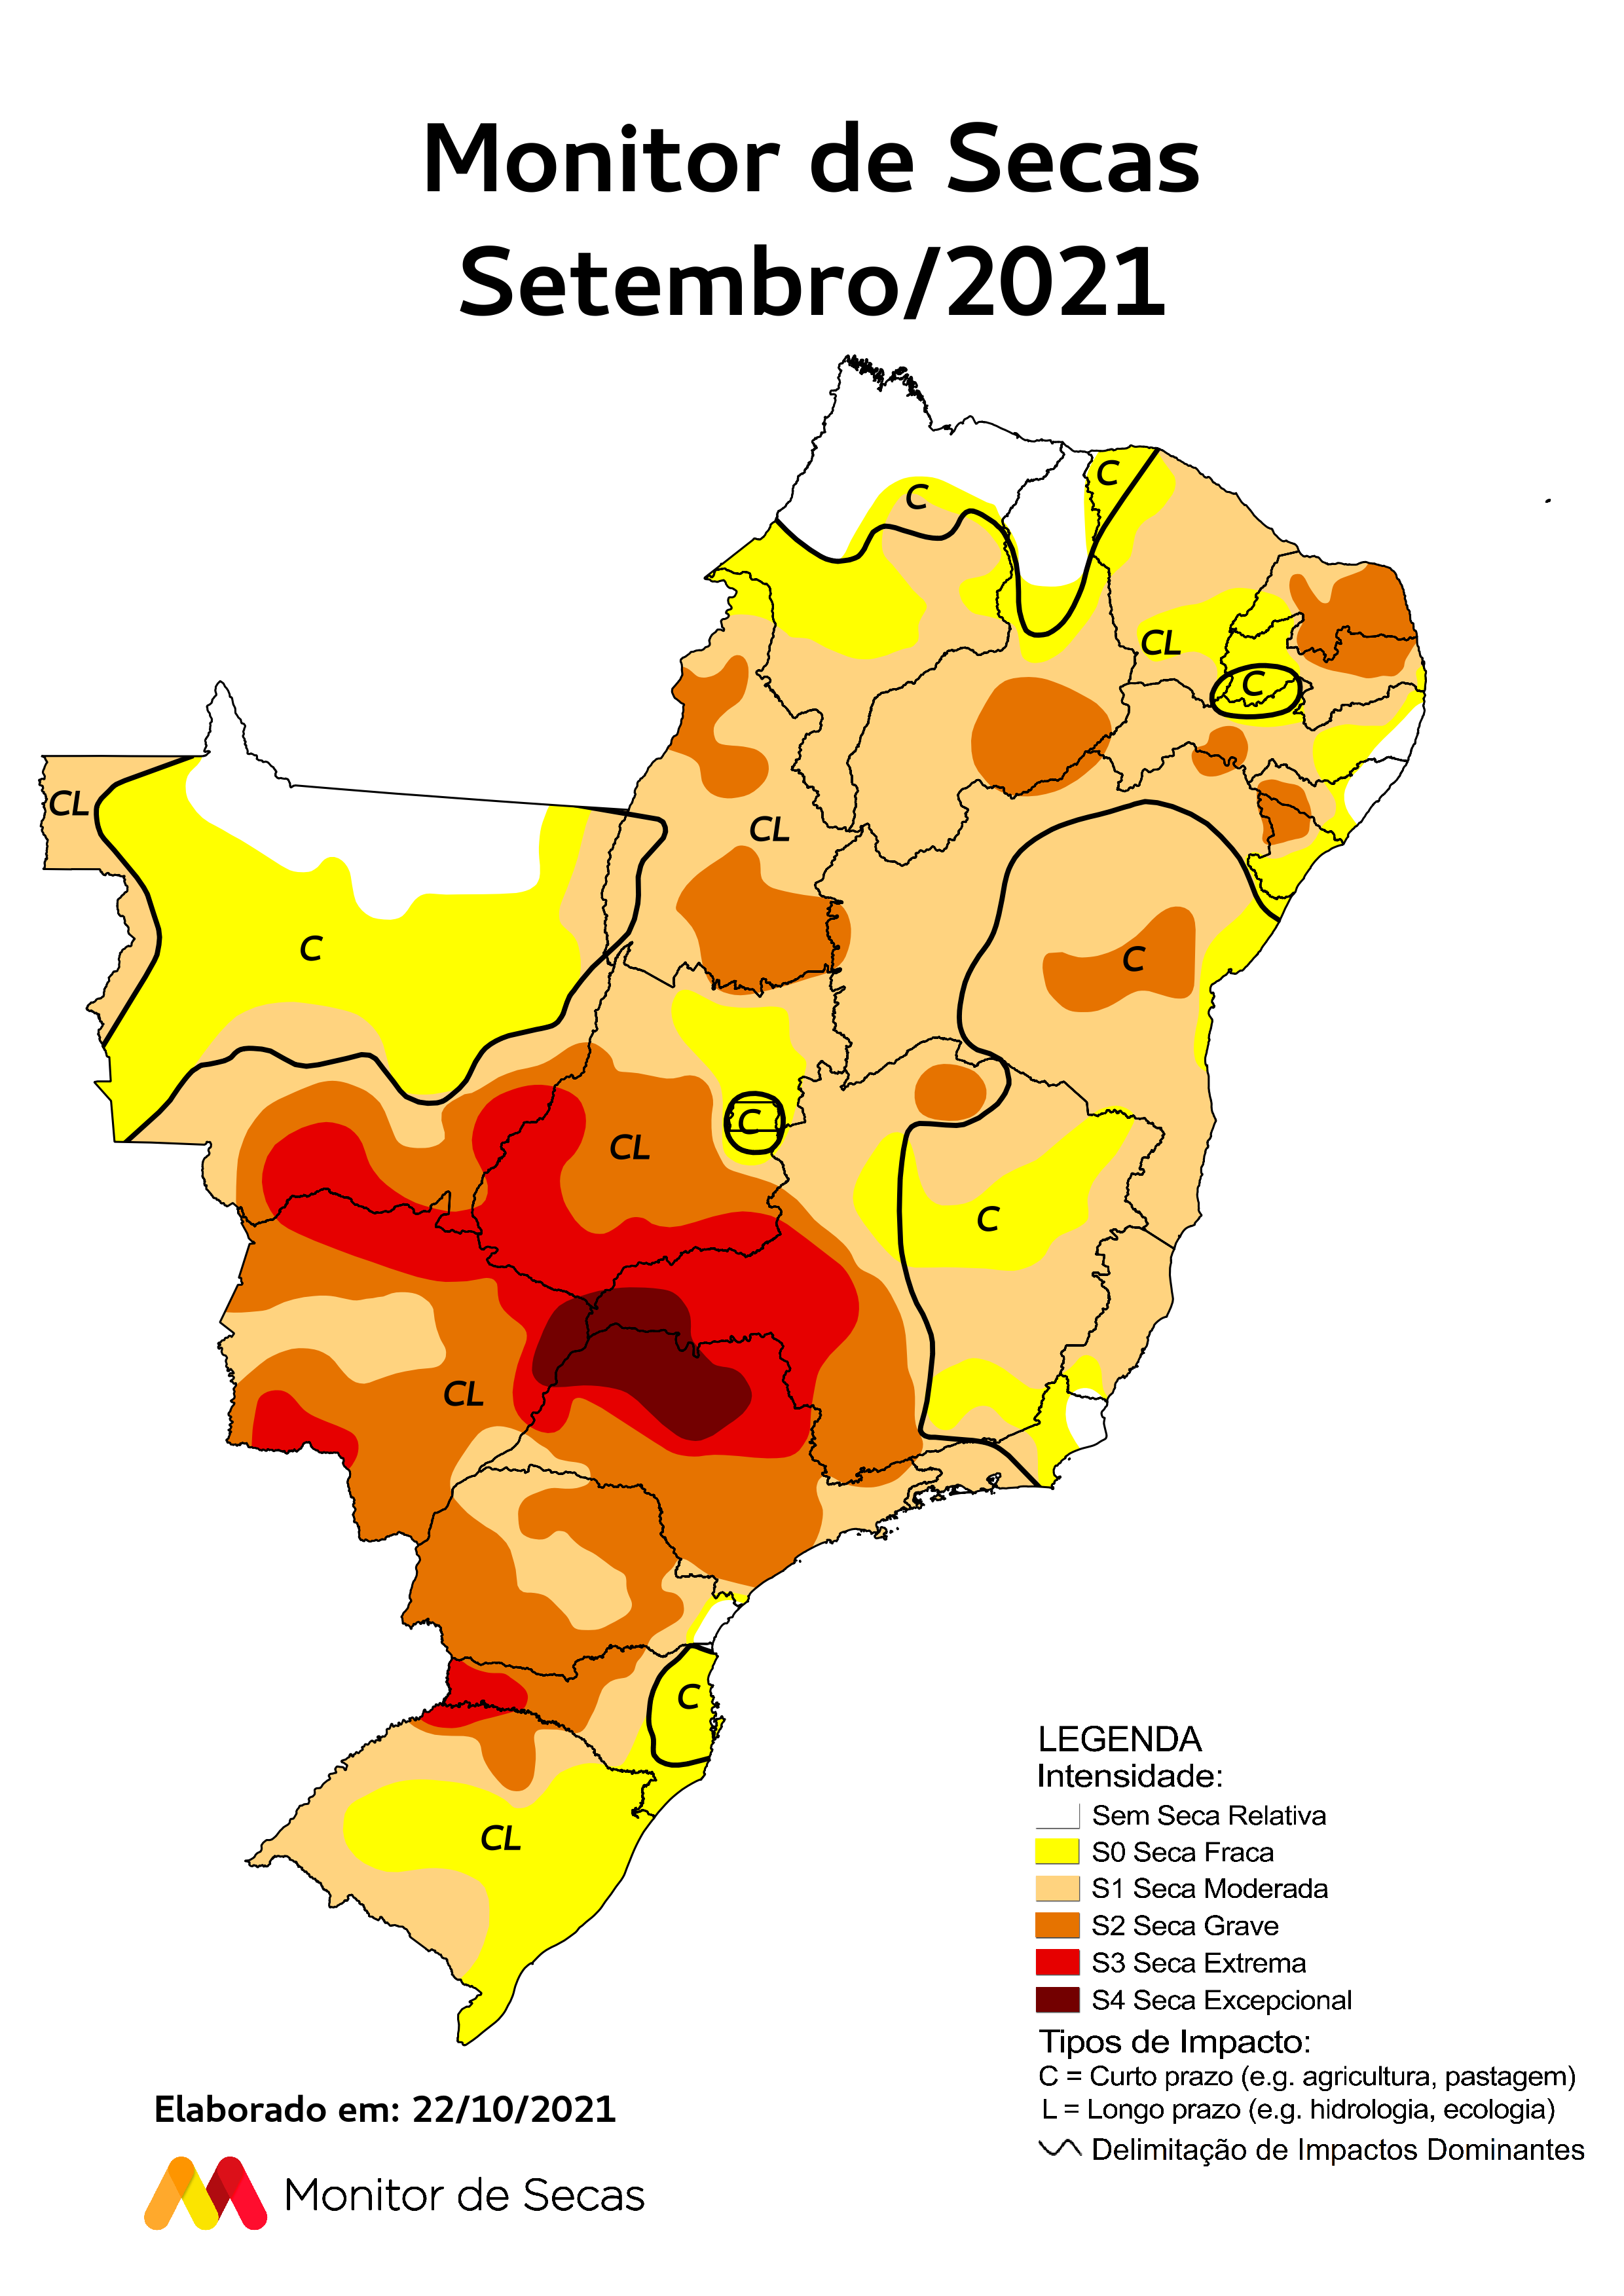 Mapa mais recente do Monitor de Secas (FOTO: Reprodução)